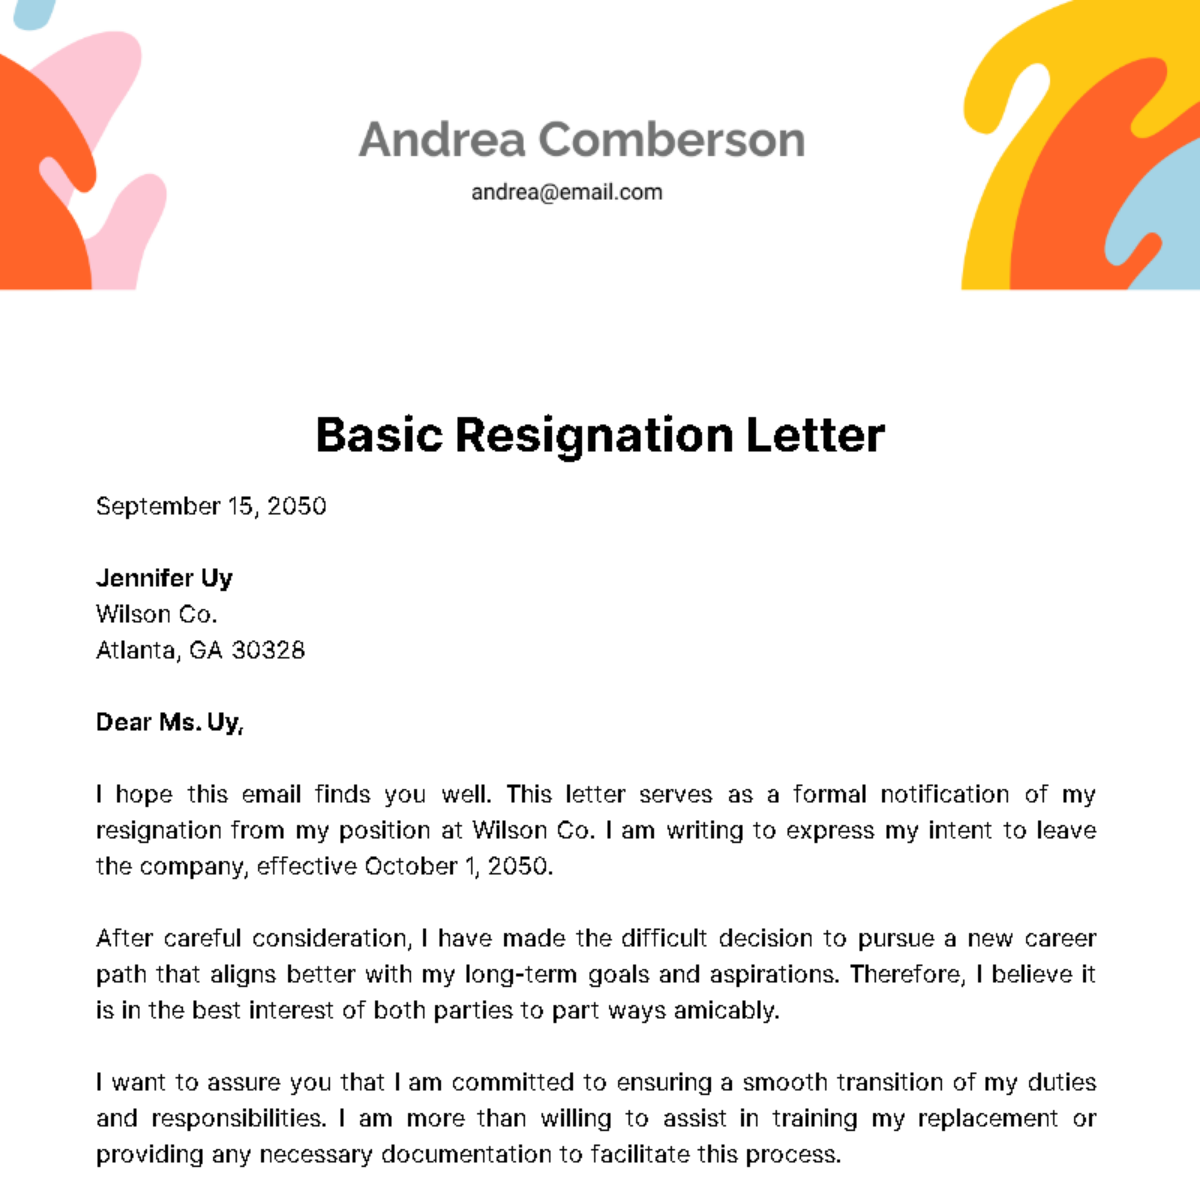 Basic Resignation Letter  Template